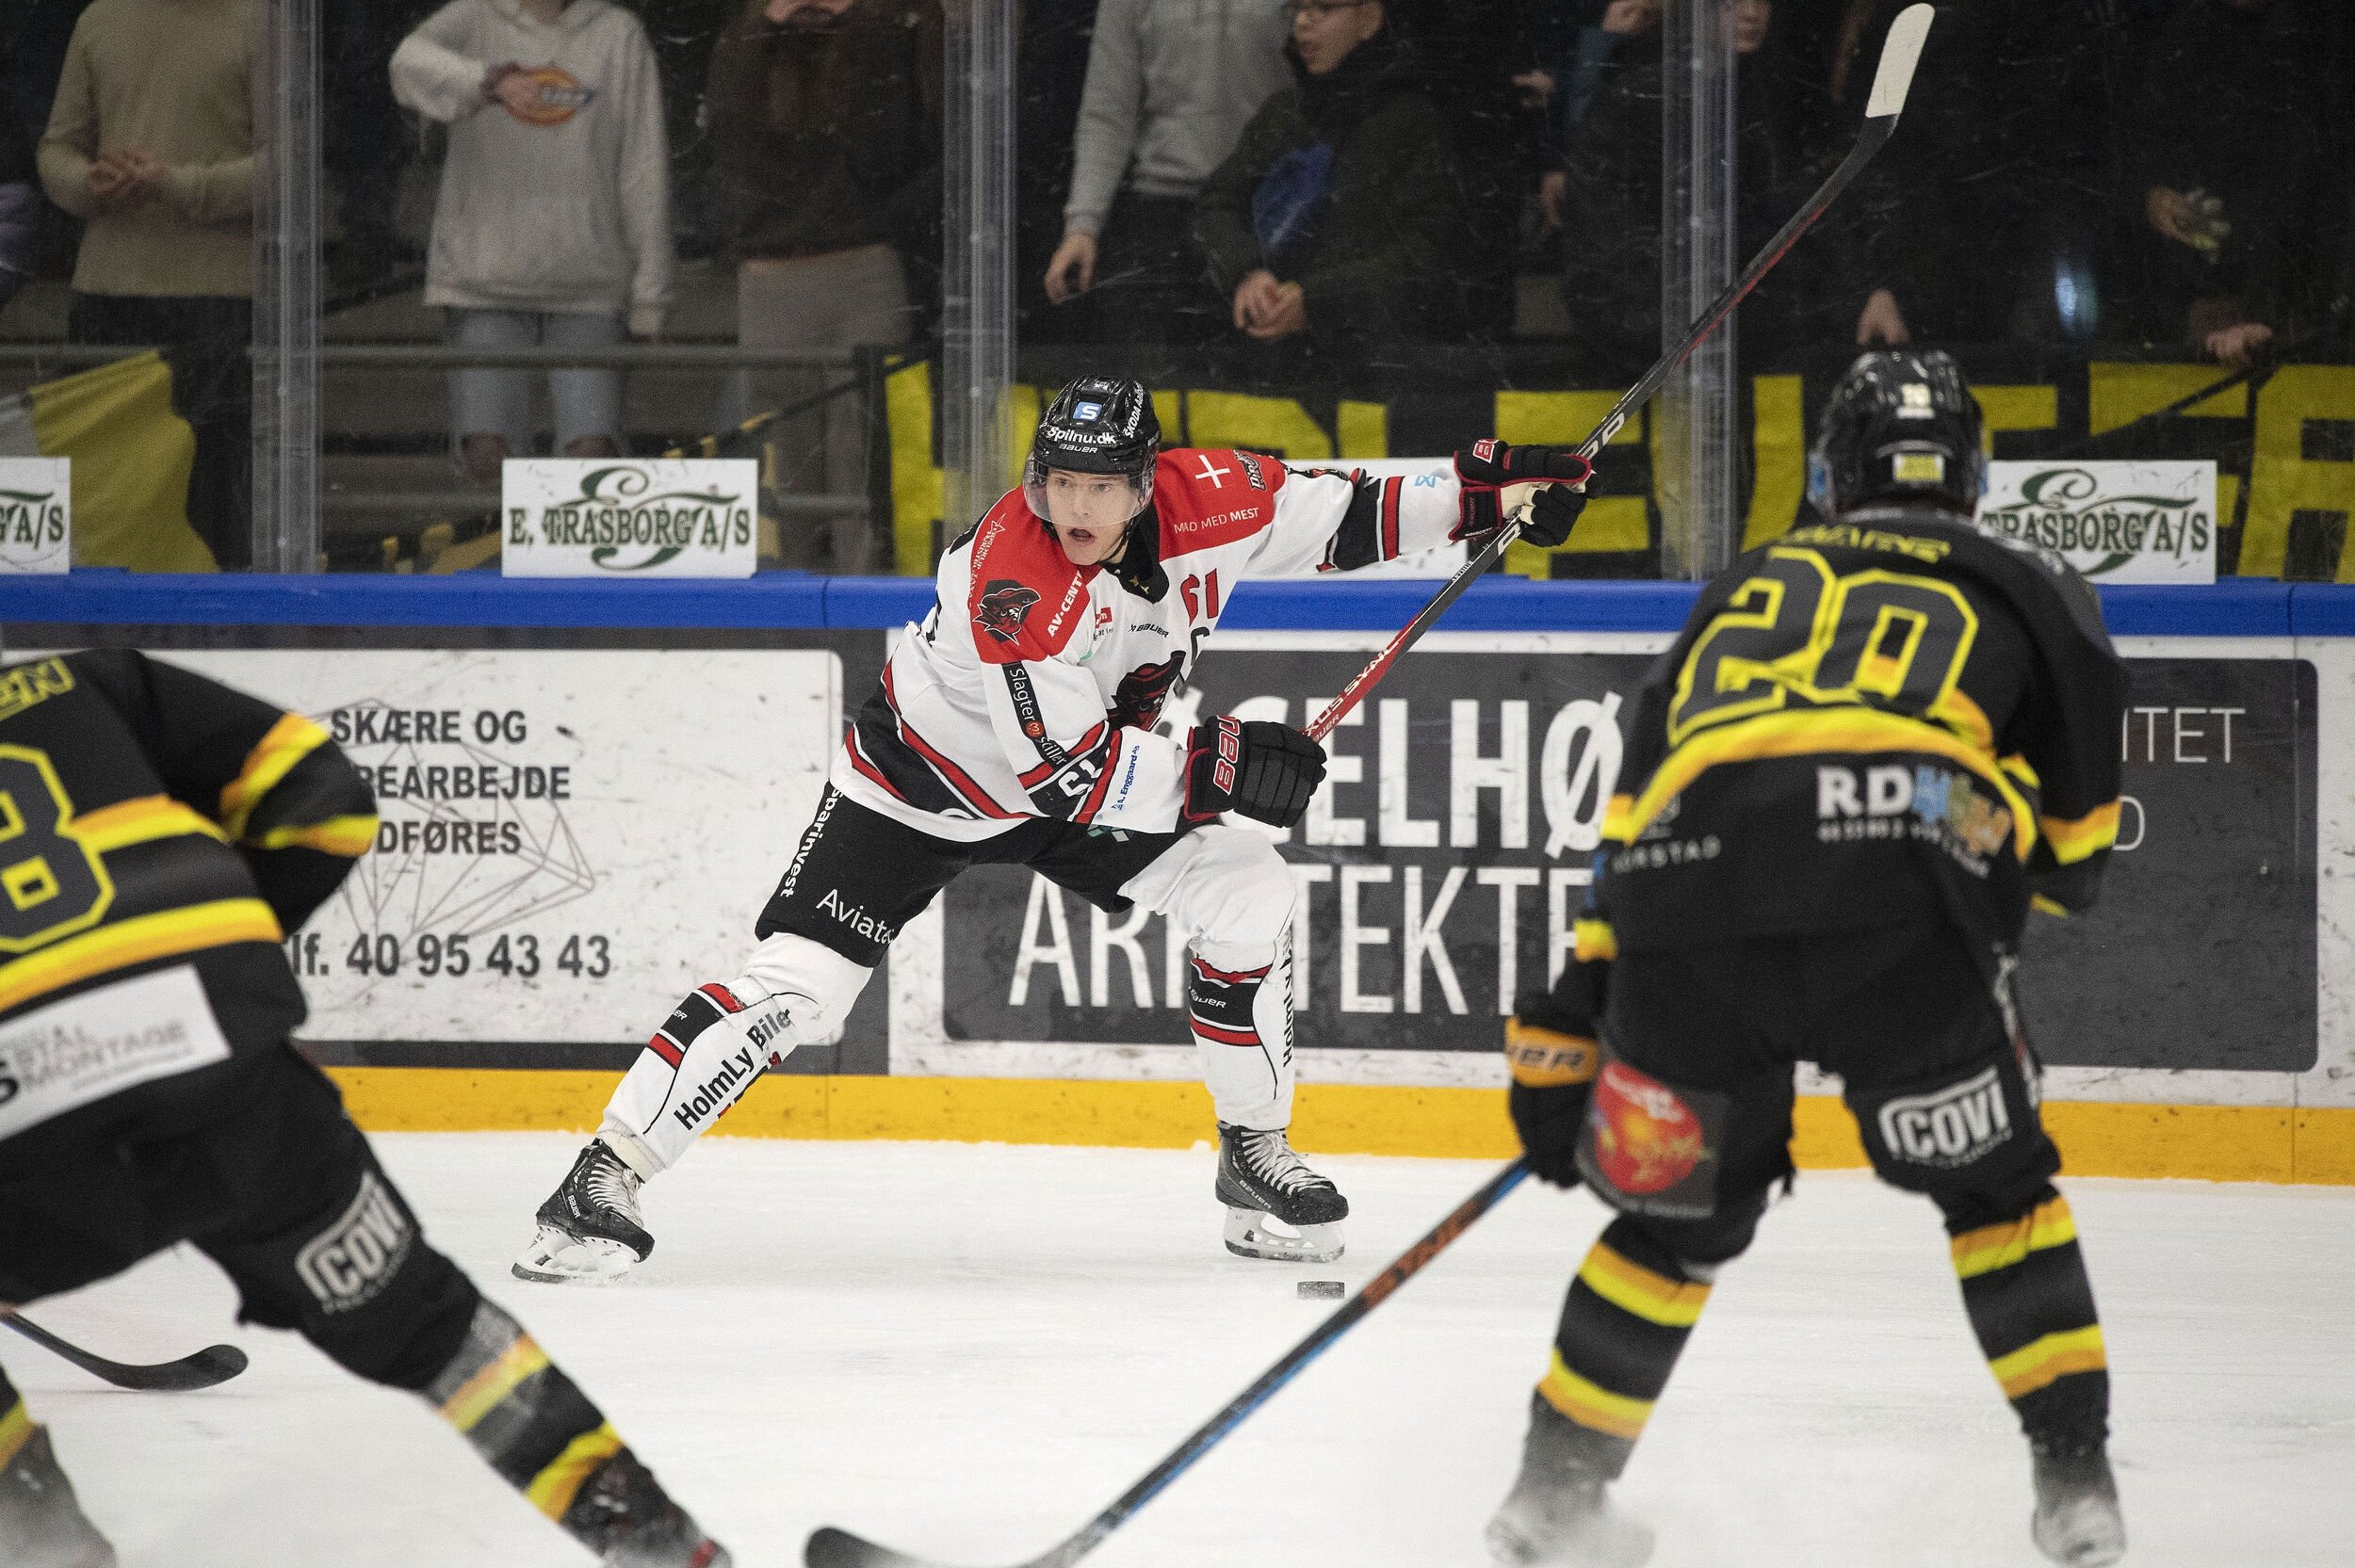 Aalborgs kaptajn forlænger ishockeylivet med tre år